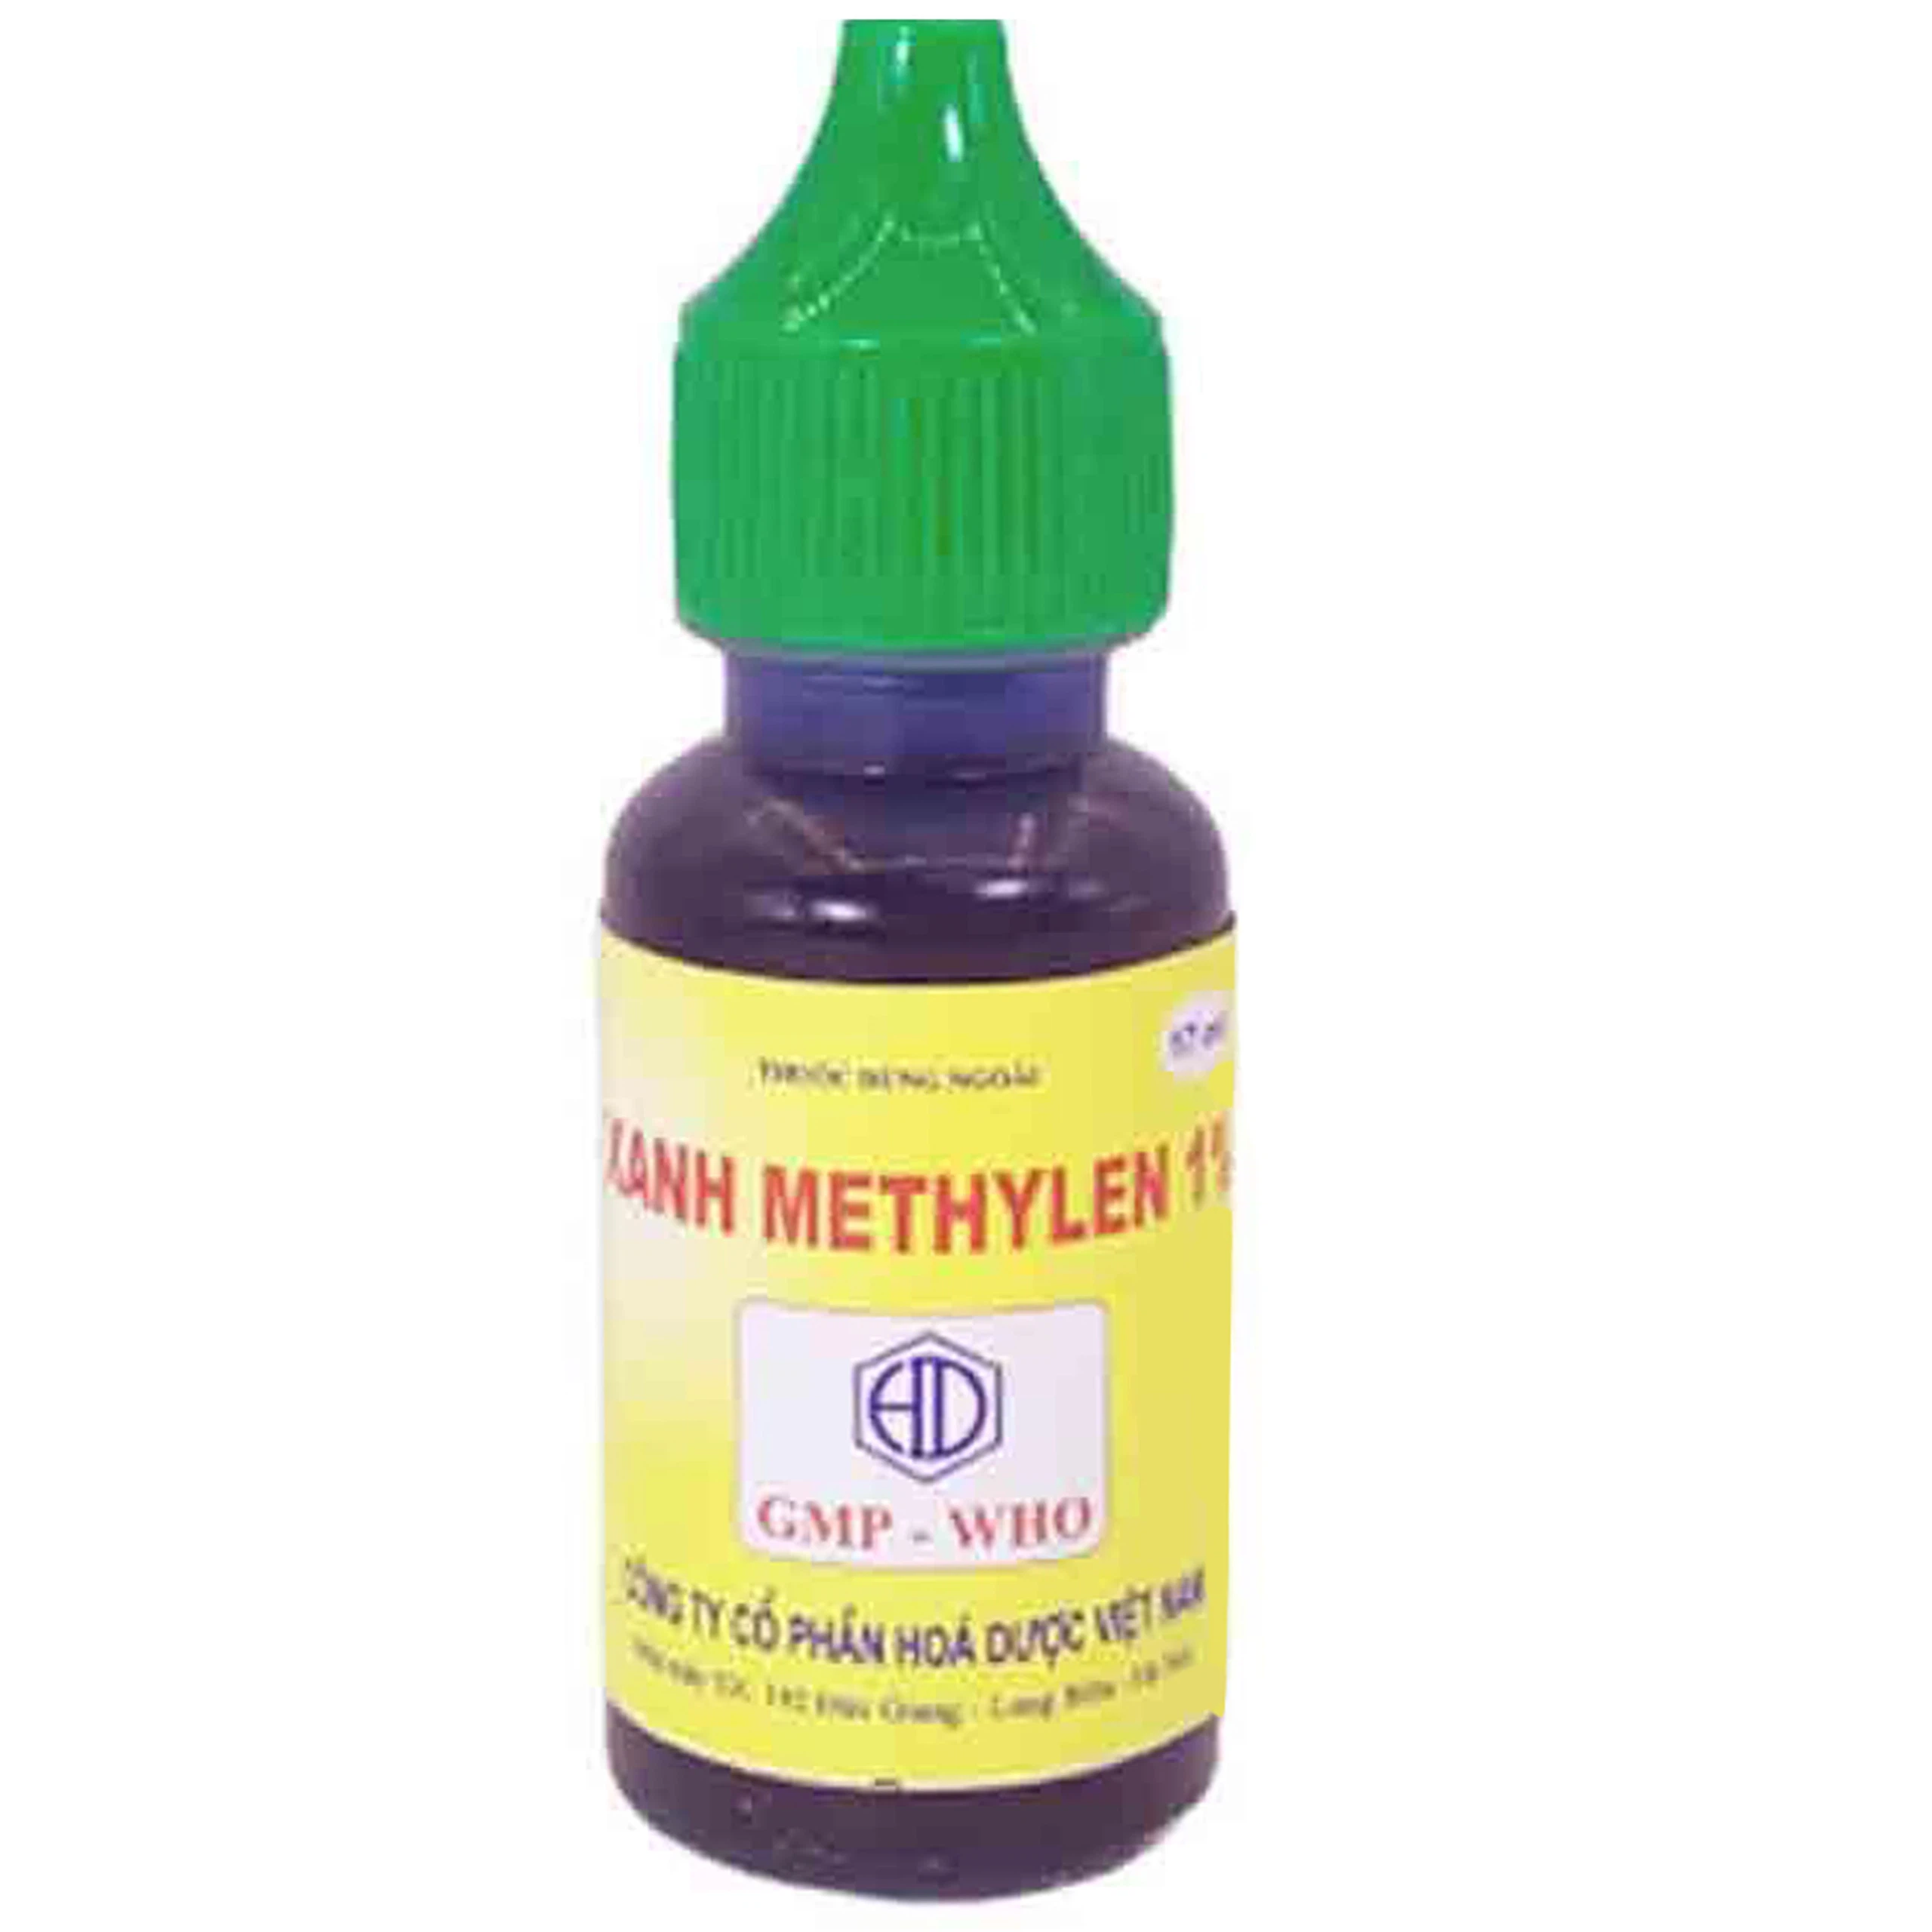 Dung dịch dùng ngoài Xanh Methylen 1% Hóa Dược điều trị chốc lở, viêm da mủ (17ml)